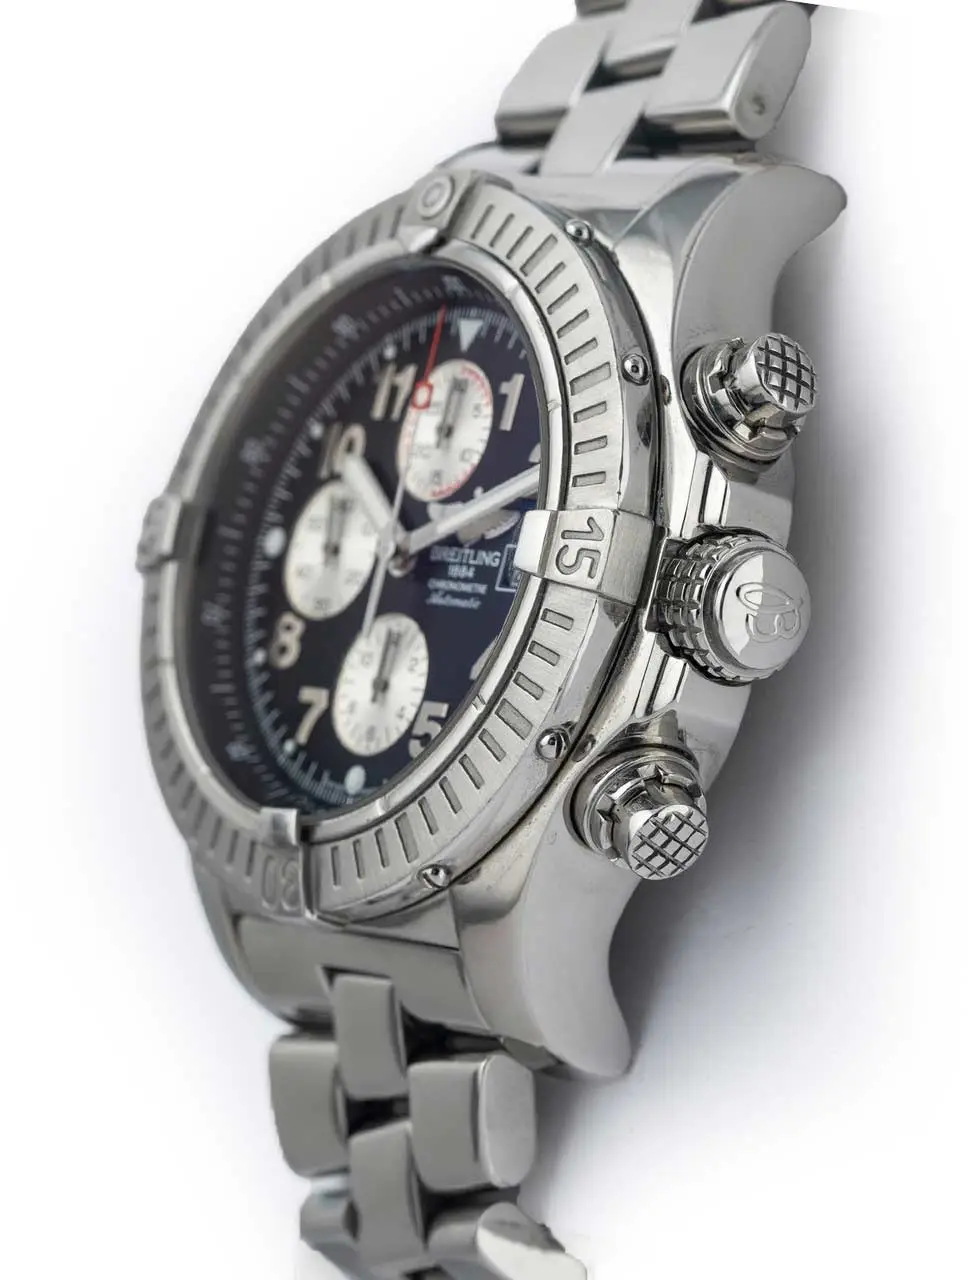 ساعت مچی برایتلینگ مدل A1337011/C972-135A